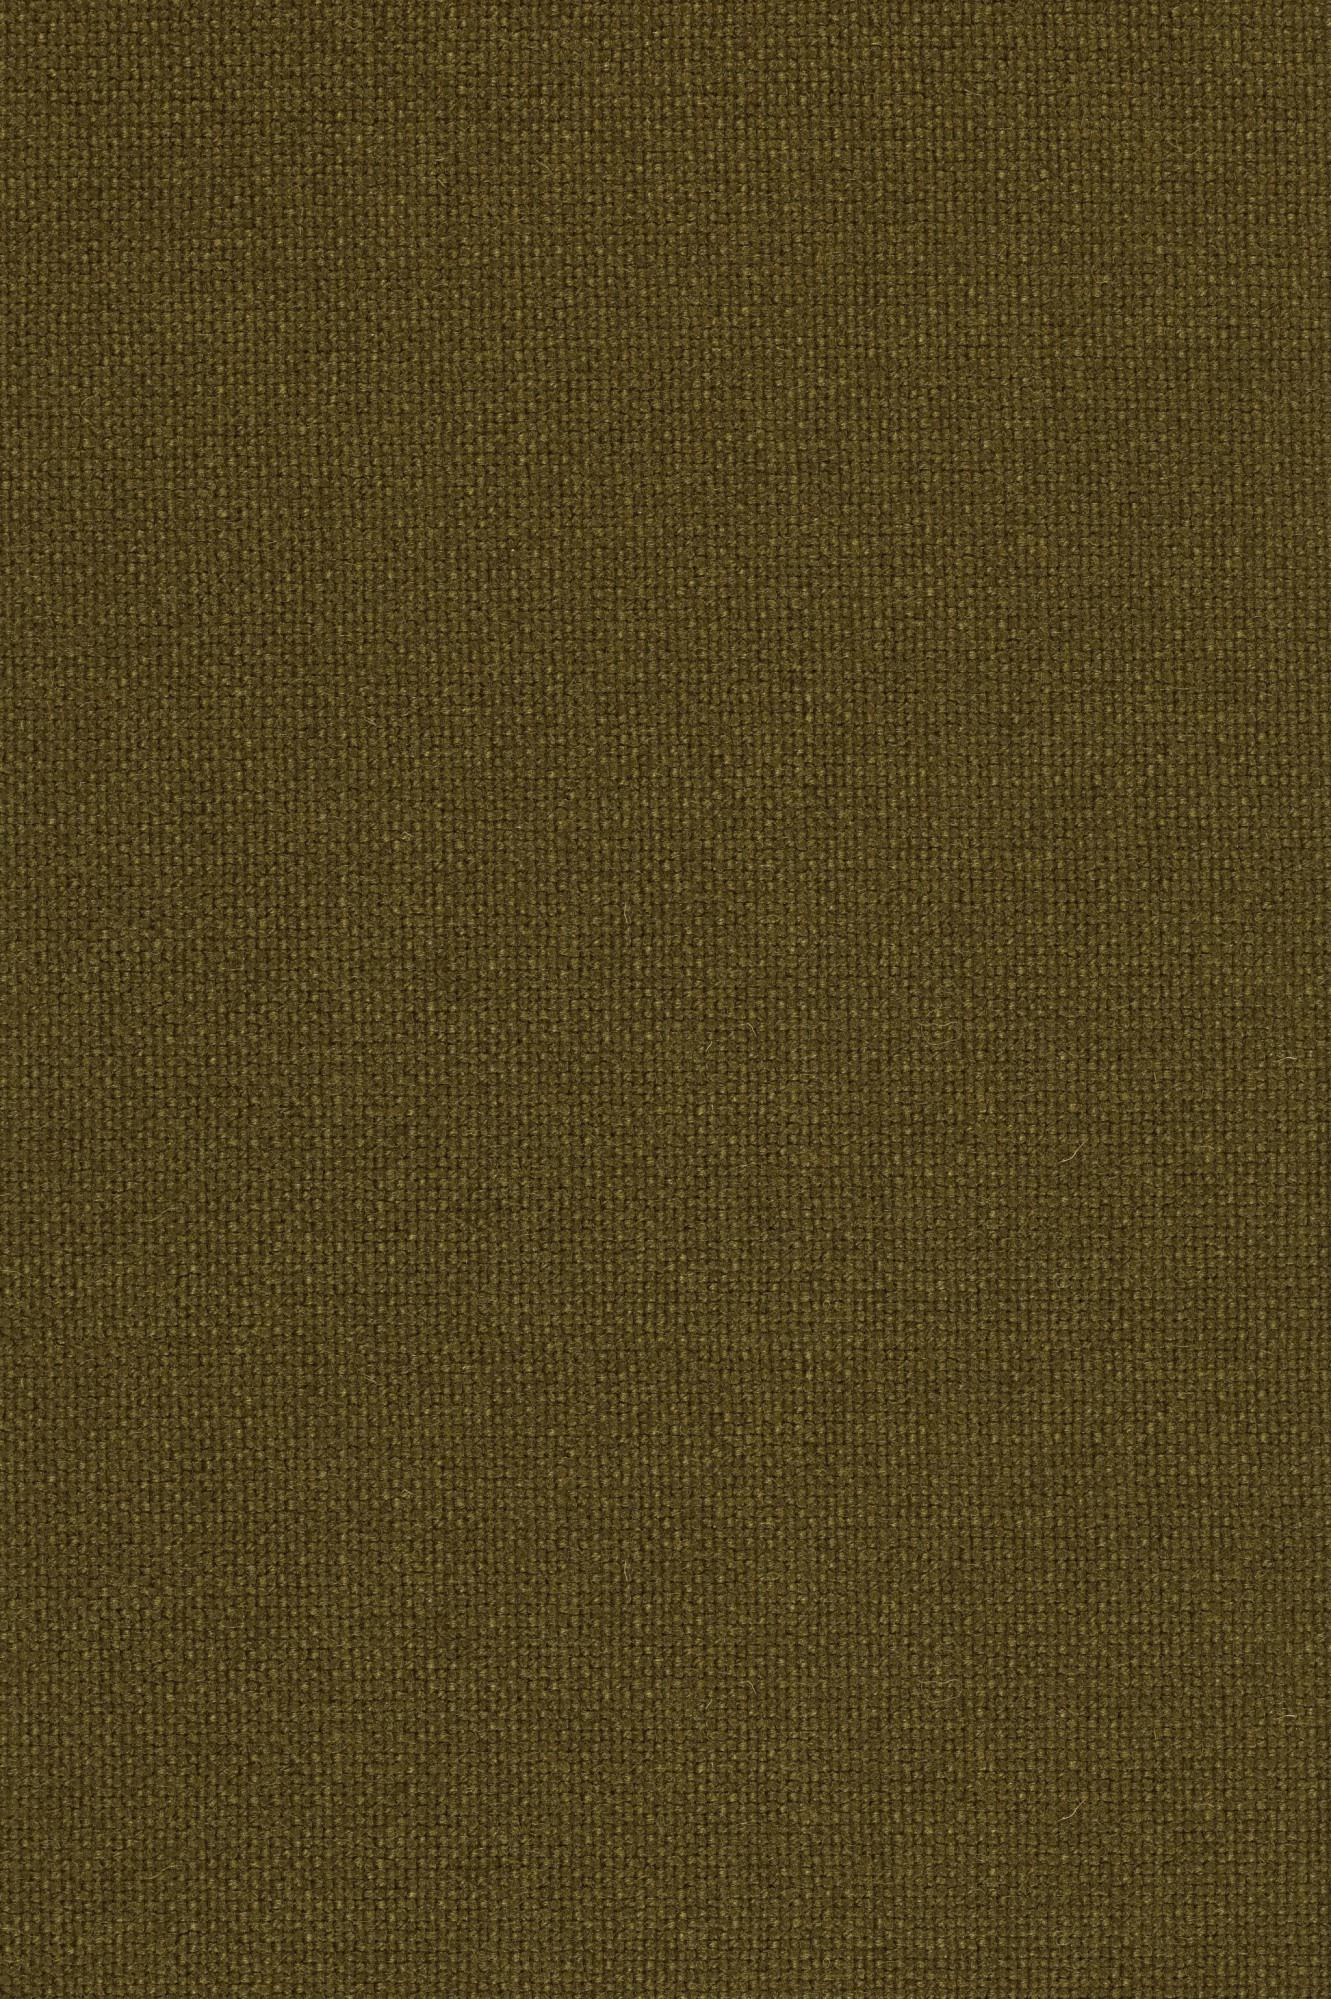 Fabric sample Hallingdal 65 350 brown